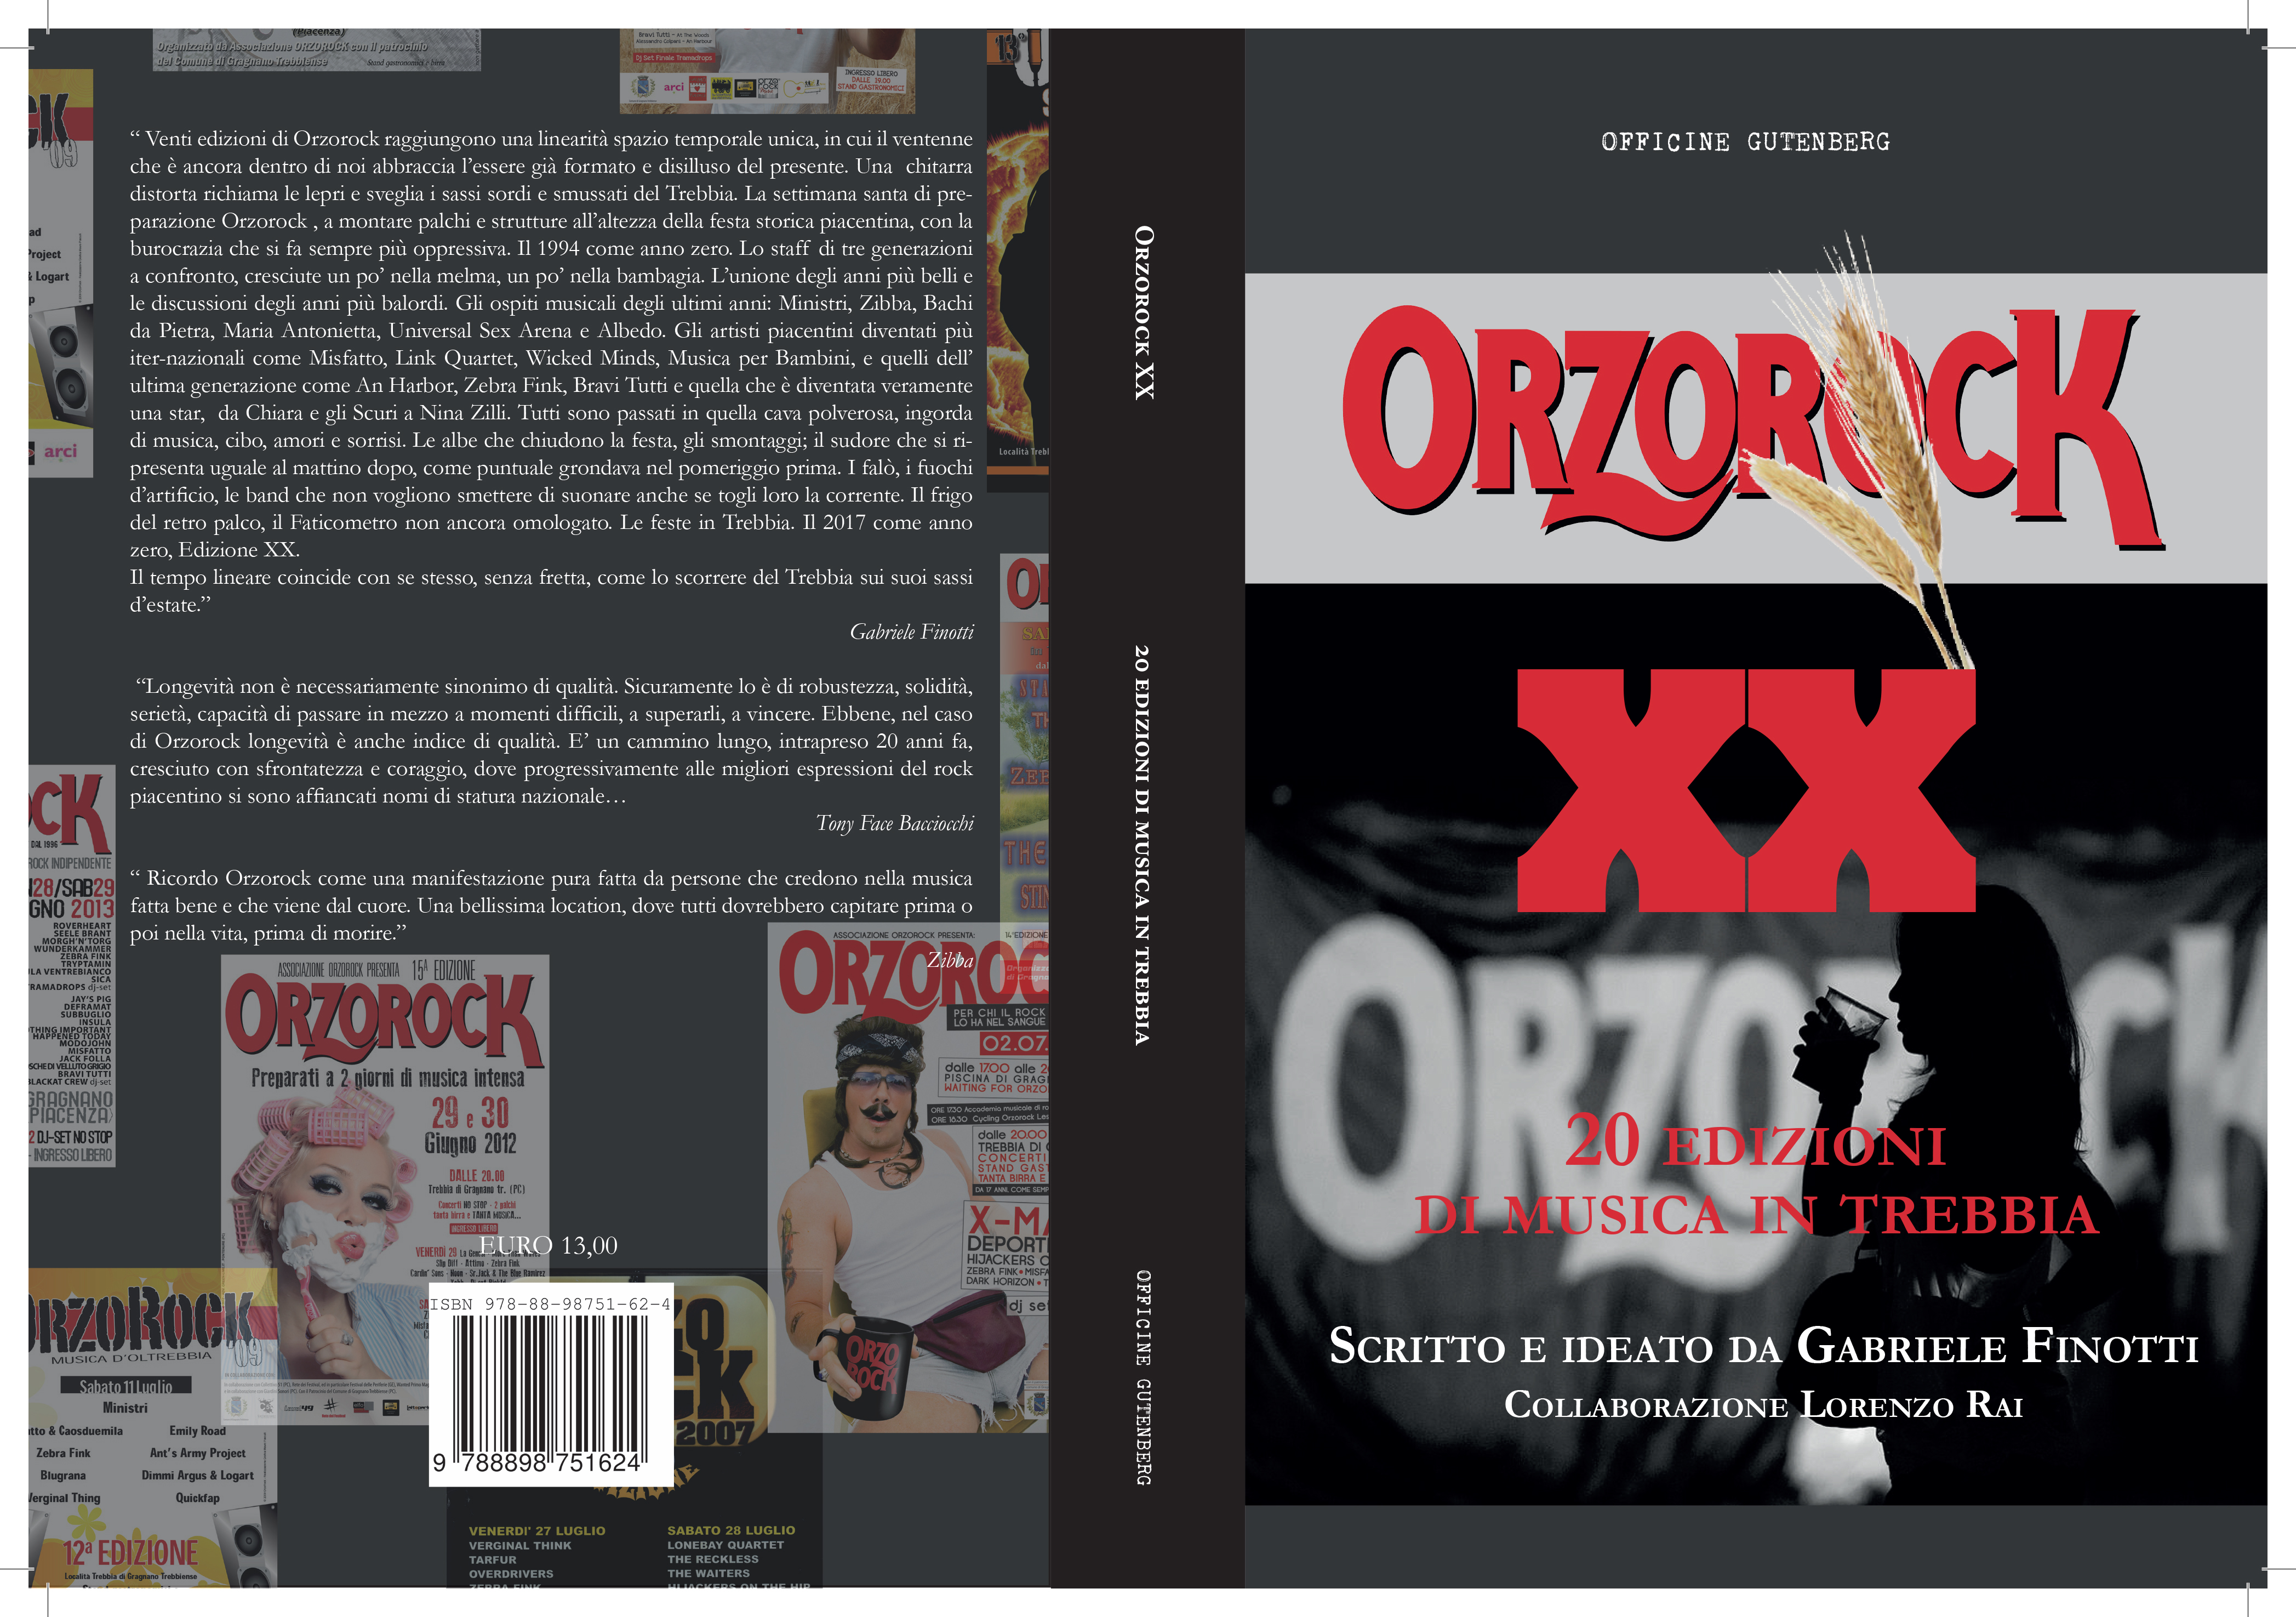 Orzorock XX – 20 Edizioni musica in trebbia – anno 2017